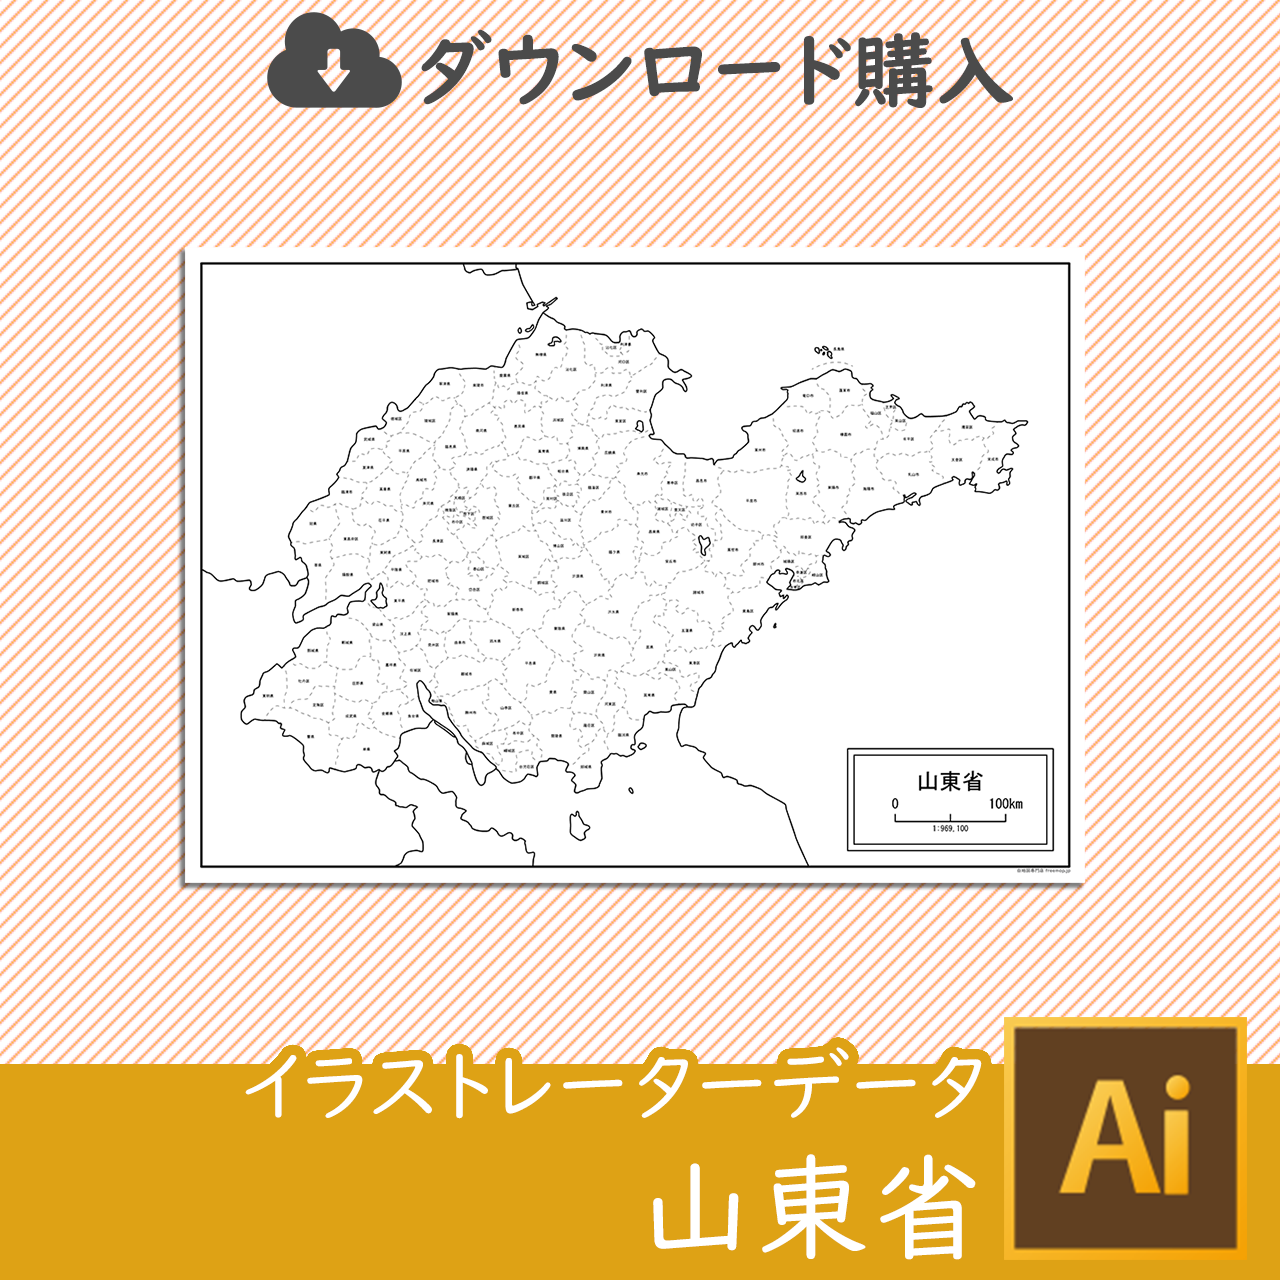 山東省の白地図データのサムネイル画像